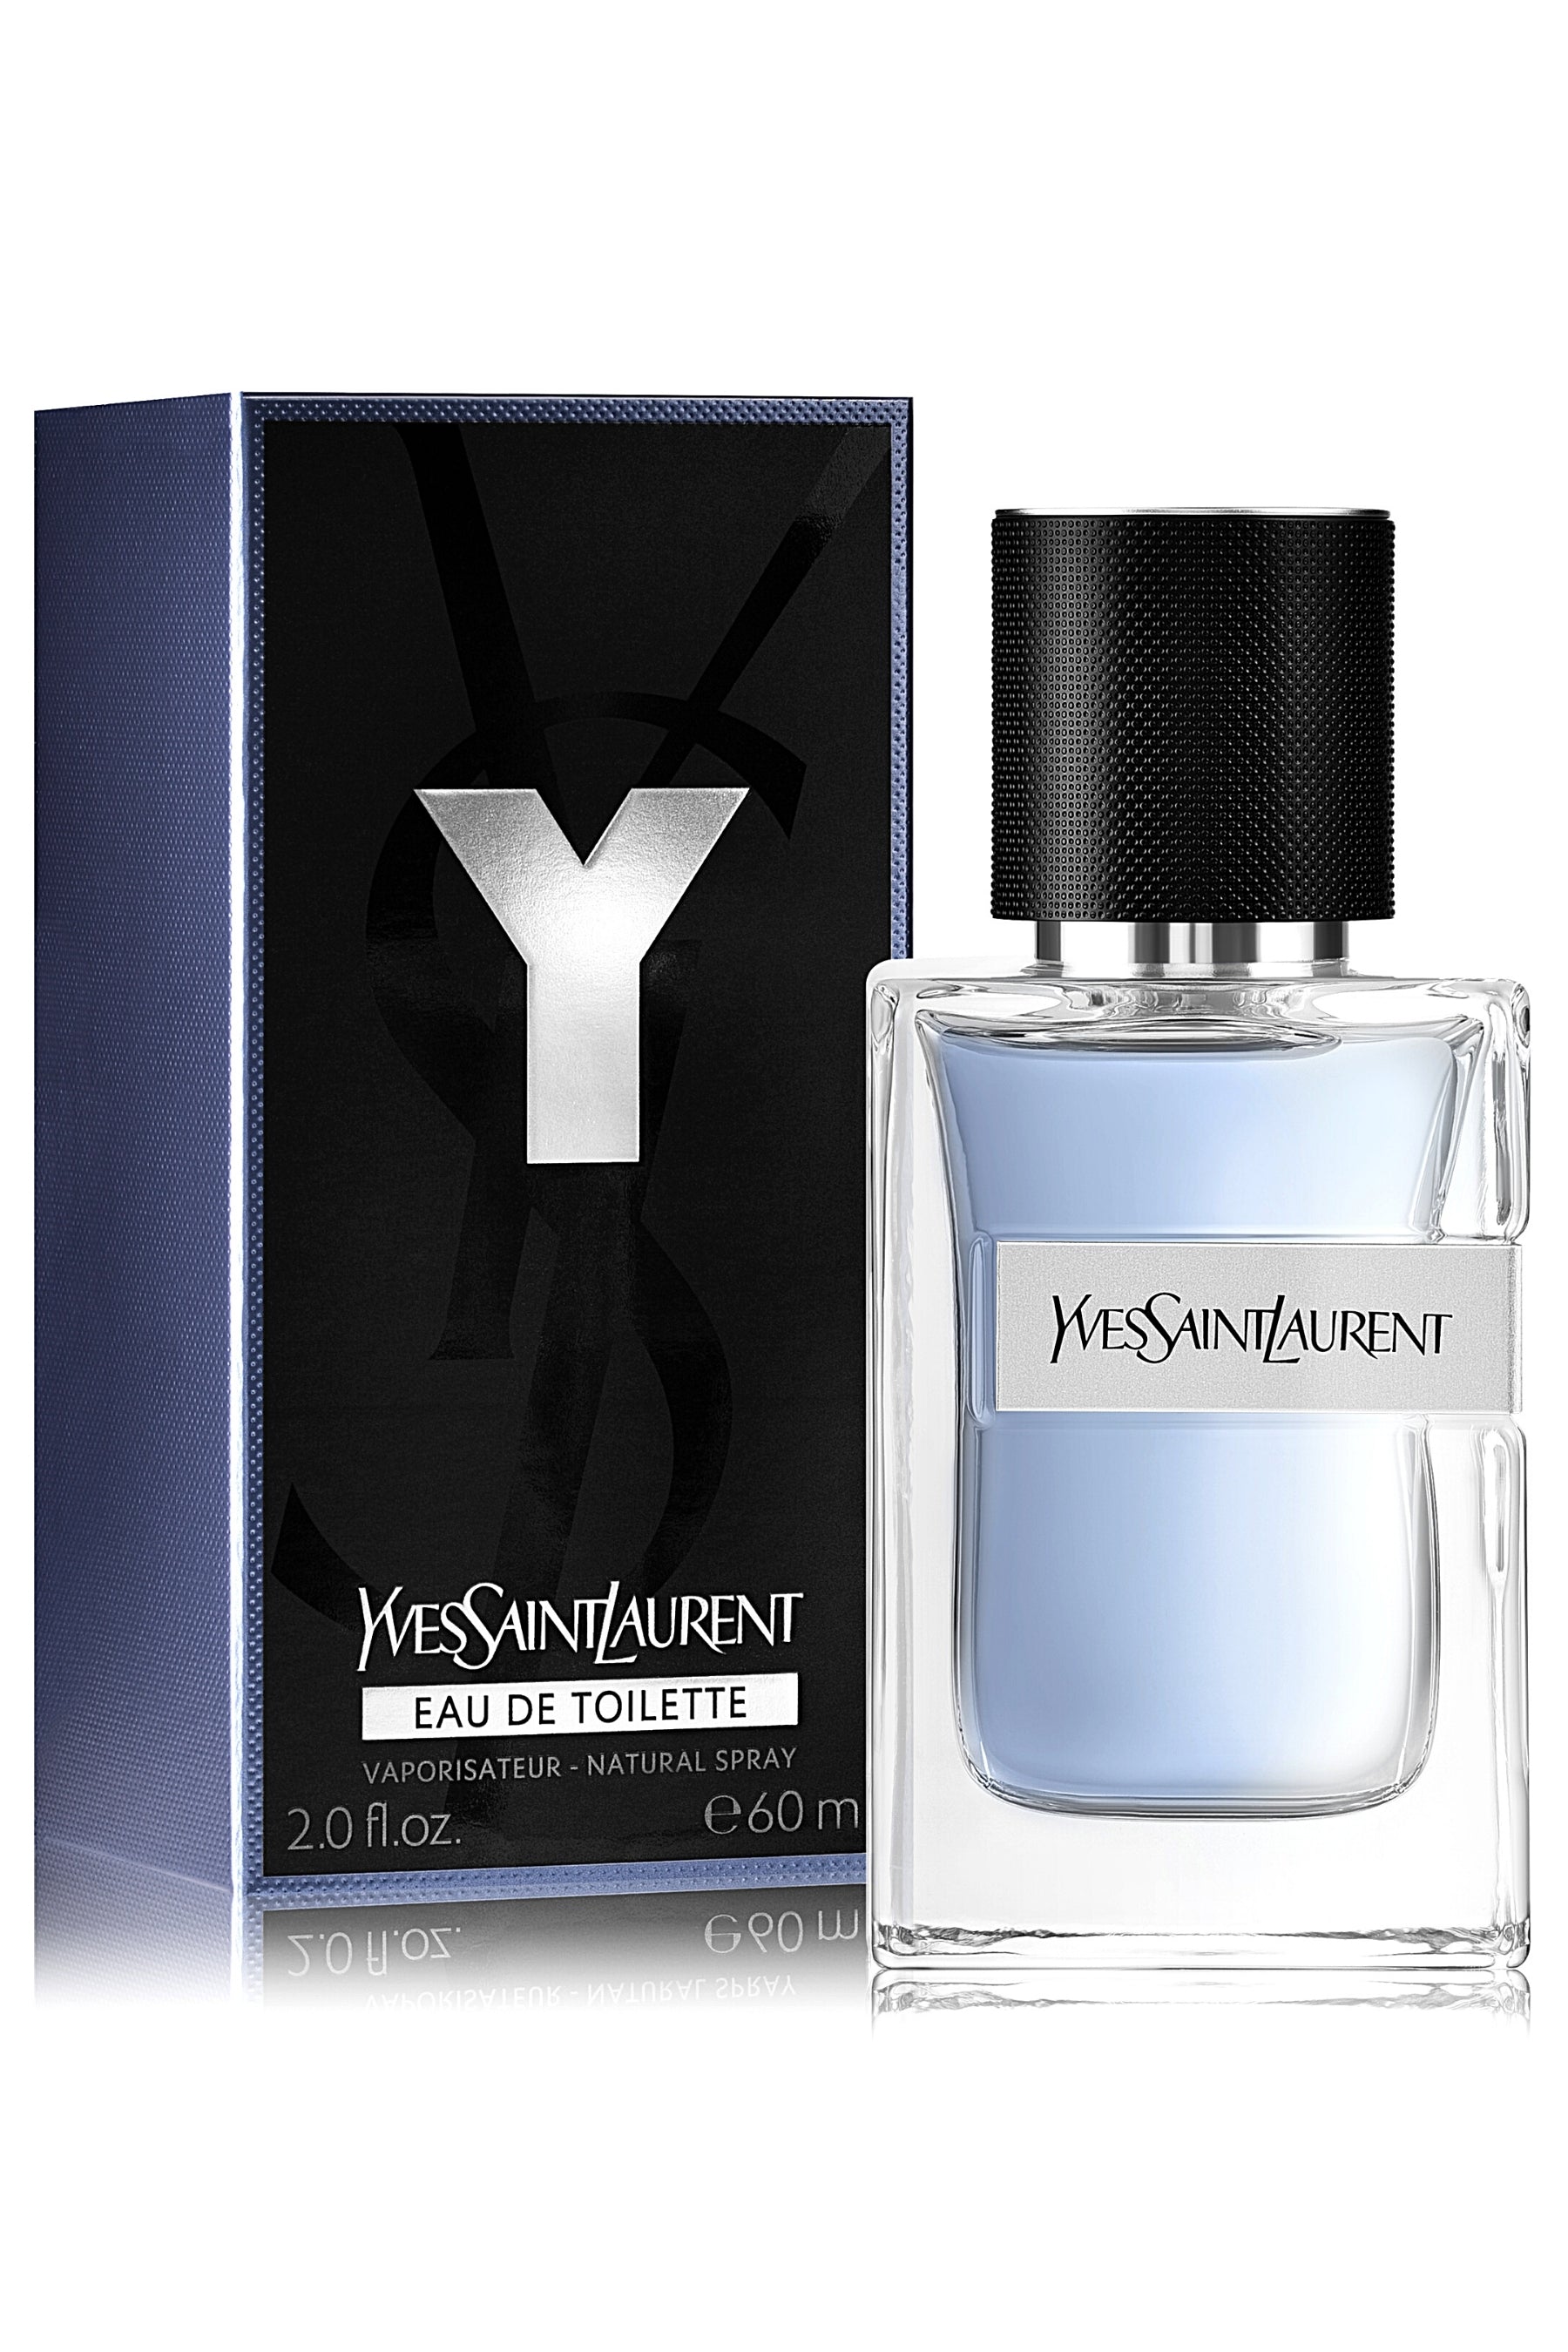 Y Men by Yves Saint Laurent Eau de Toilette Spray 2.0 oz